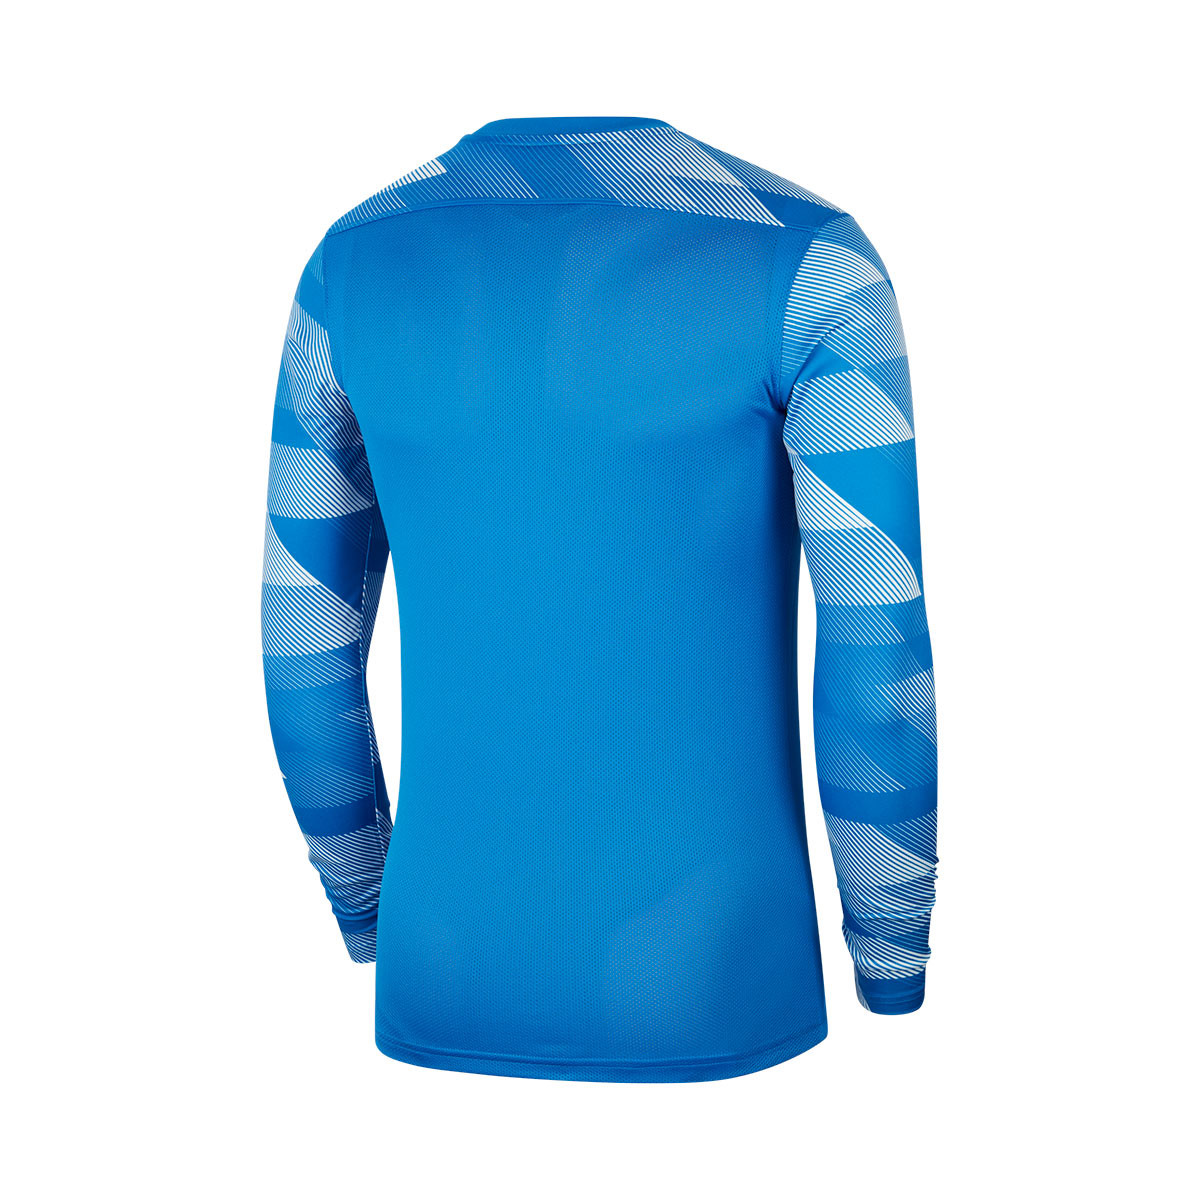 blue goalkeeper jersey